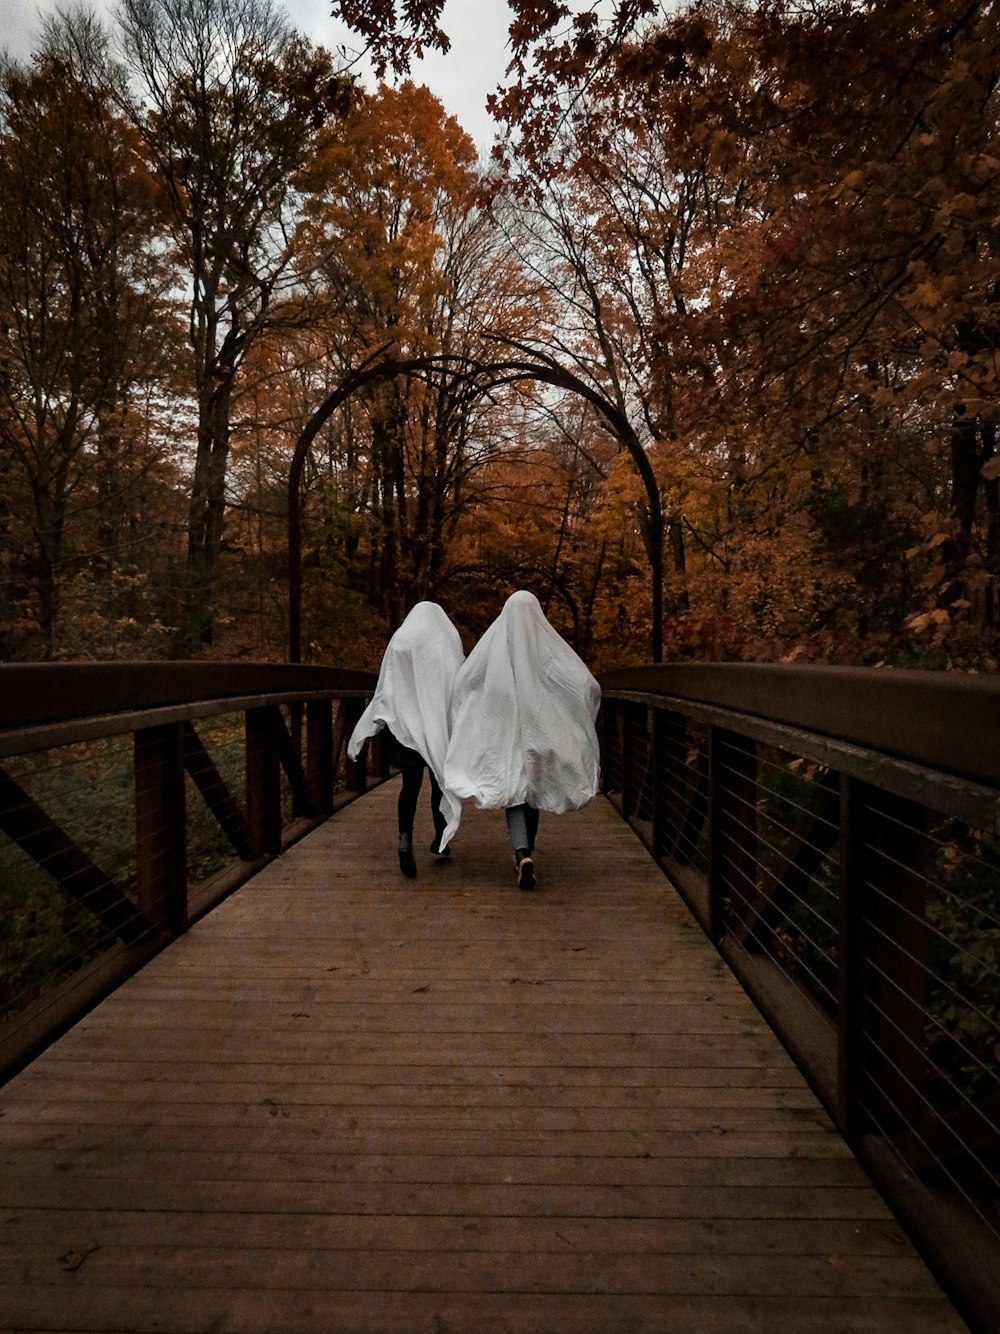 woman in white dress walking on wooden bridge